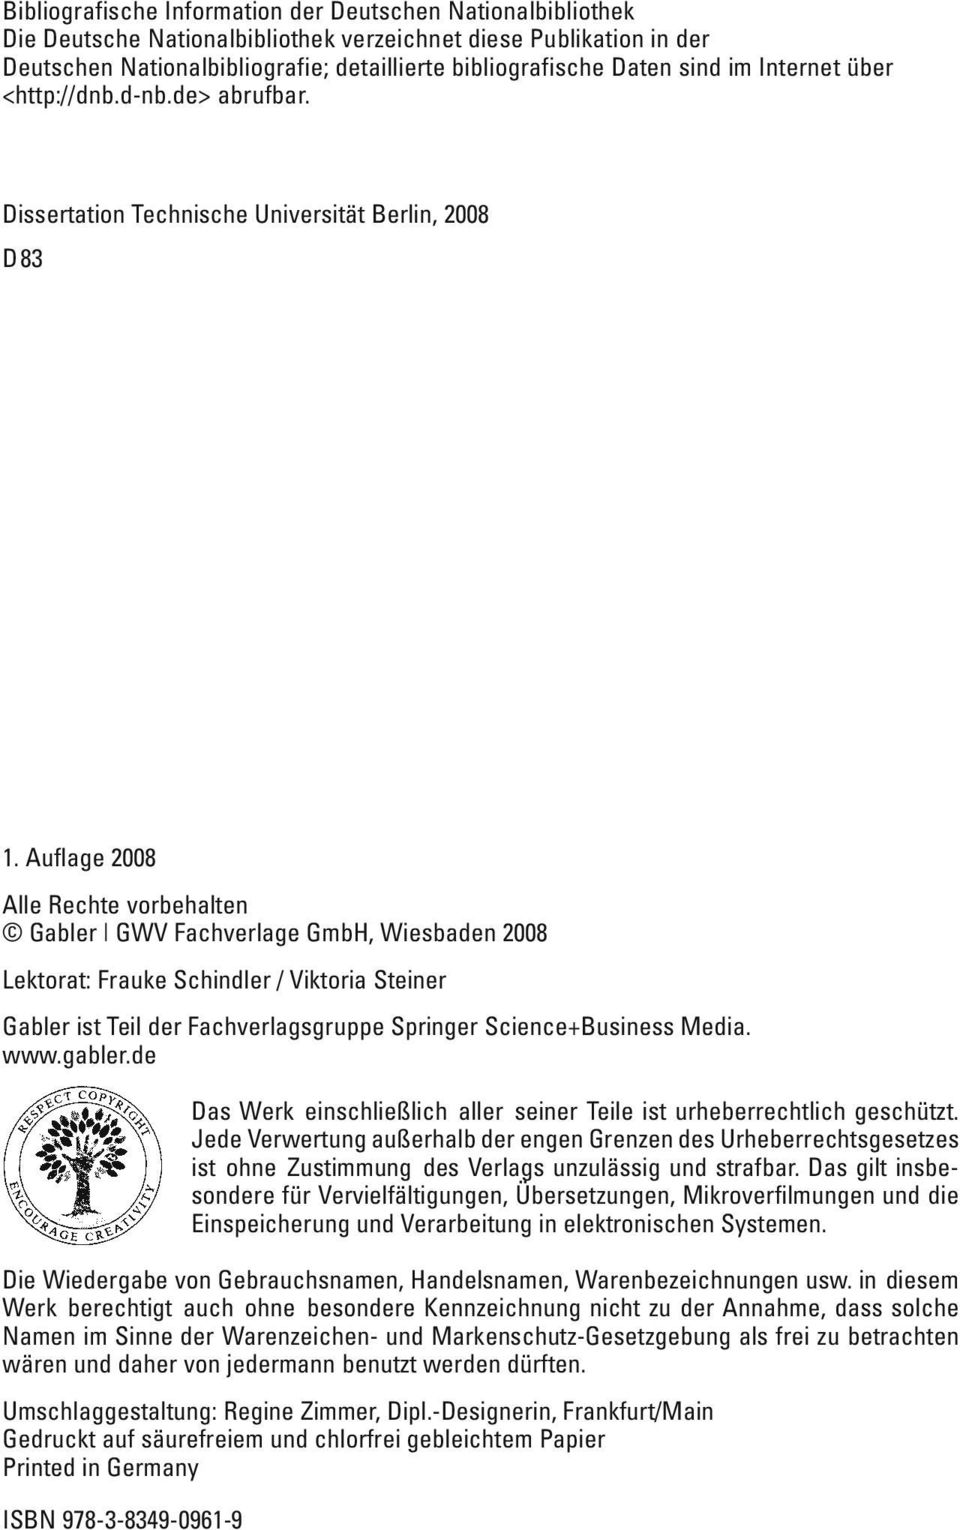 Auflage 2008 Alle Rechte vorbehalten Gabler GWV Fachverlage GmbH, Wiesbaden 2008 Lektorat: Frauke Schindler / Viktoria Steiner Gabler ist Teil der Fachverlagsgruppe Springer Science+Business Media.